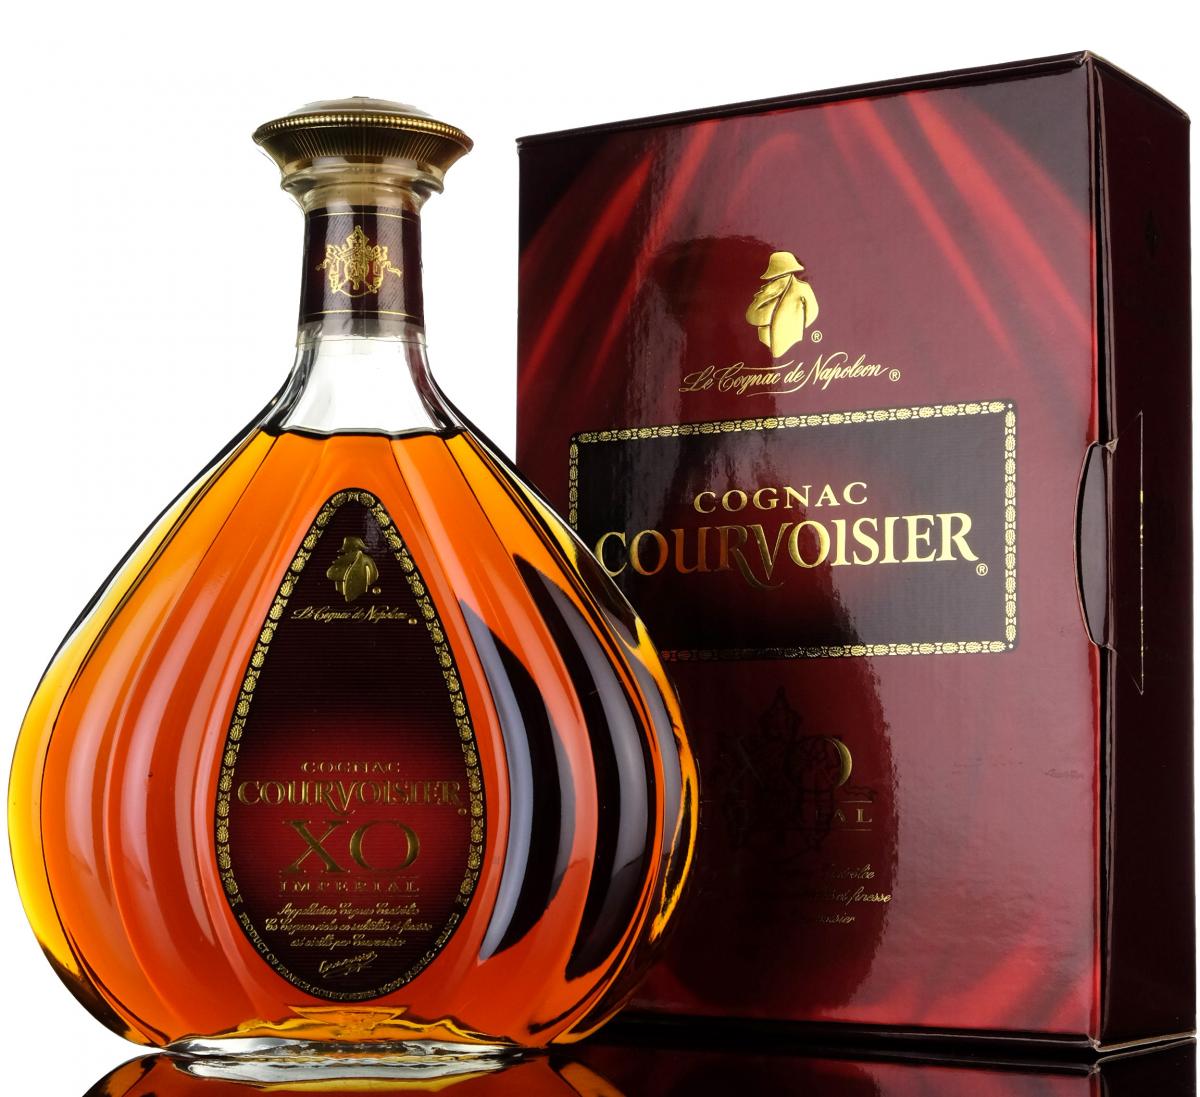 Courvoisier XO Cognac